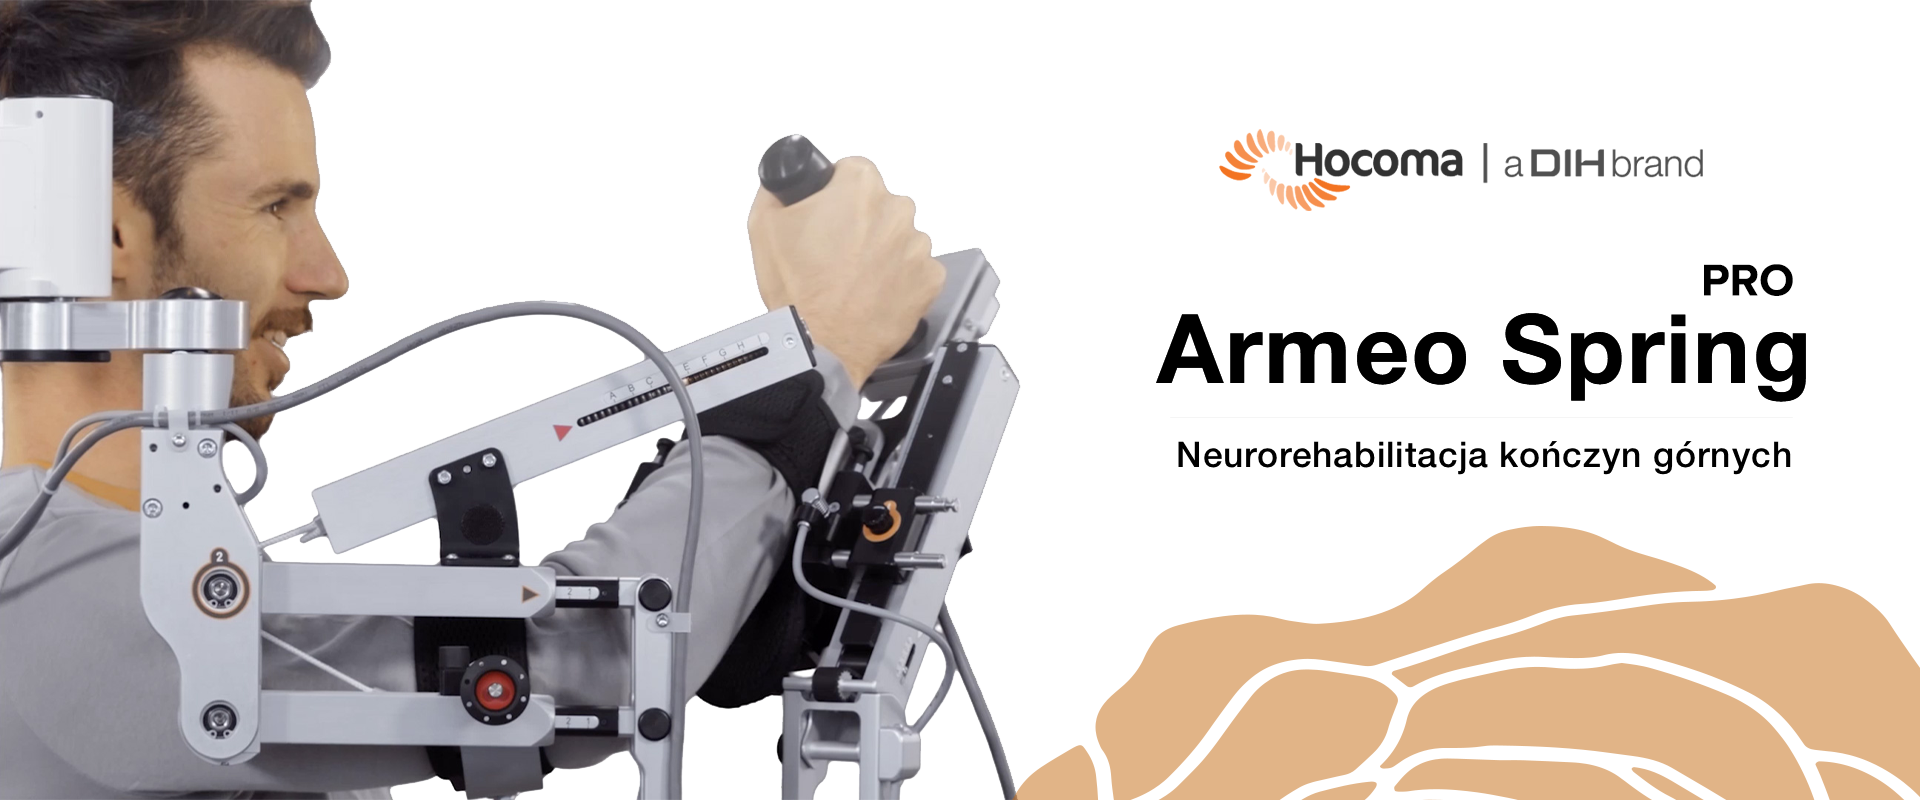 Armeo®Spring Pro - Urządzenie z zaawansowanym mechanizmem sprężynowym do rehabilitacji kończyny górnej